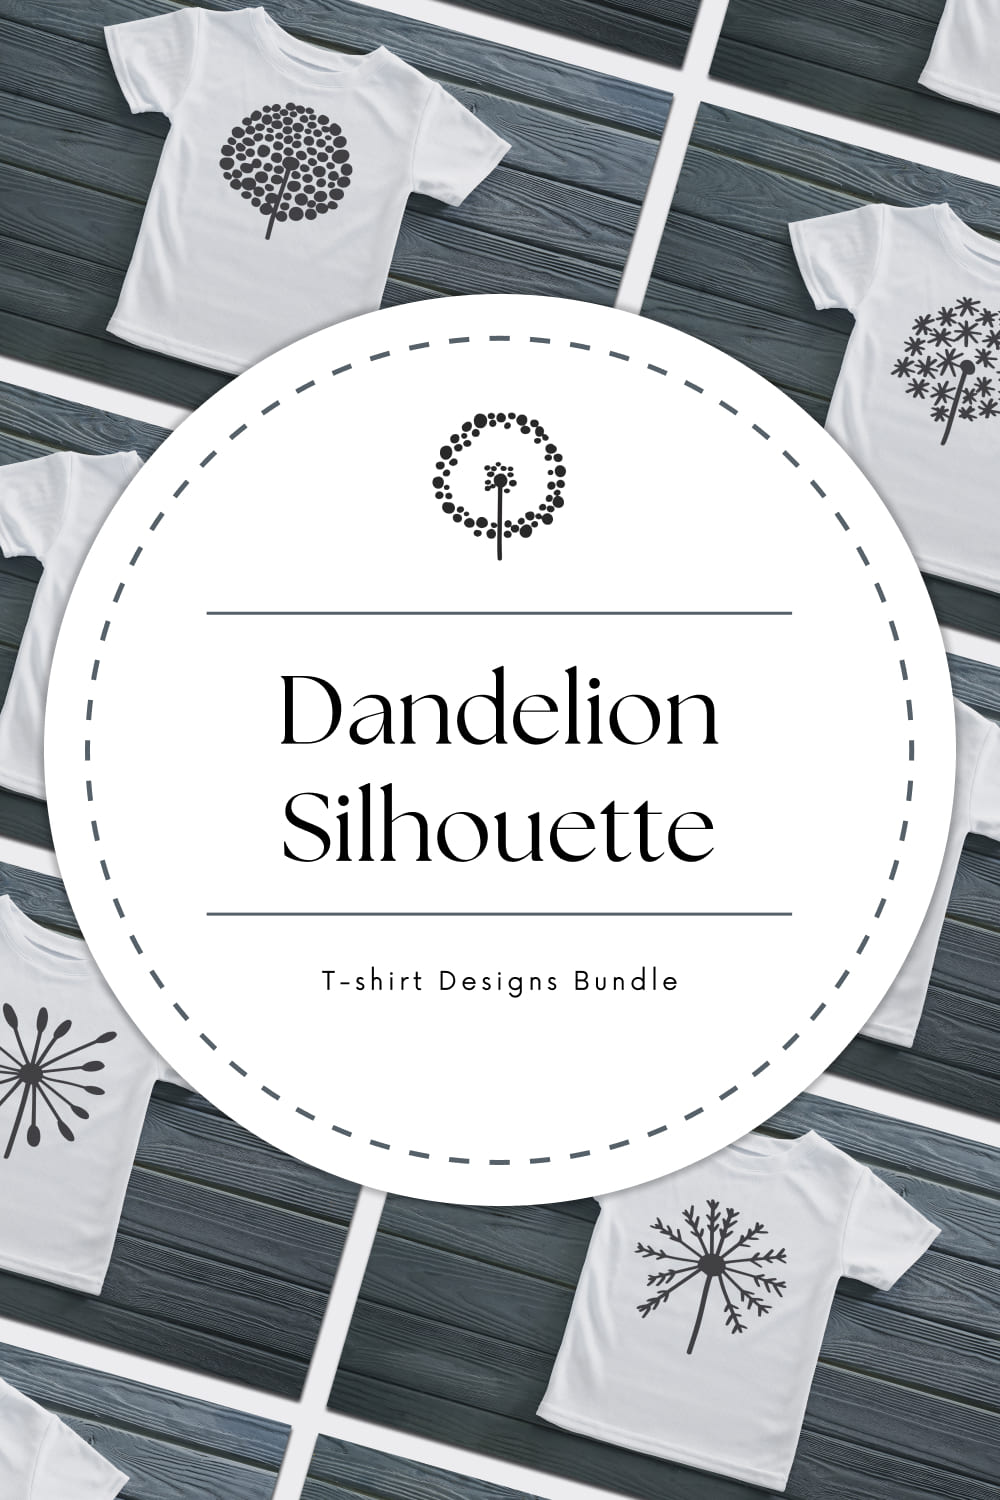 Dandelion Silhouette T-shirt Designs Bundle - Pinterest.